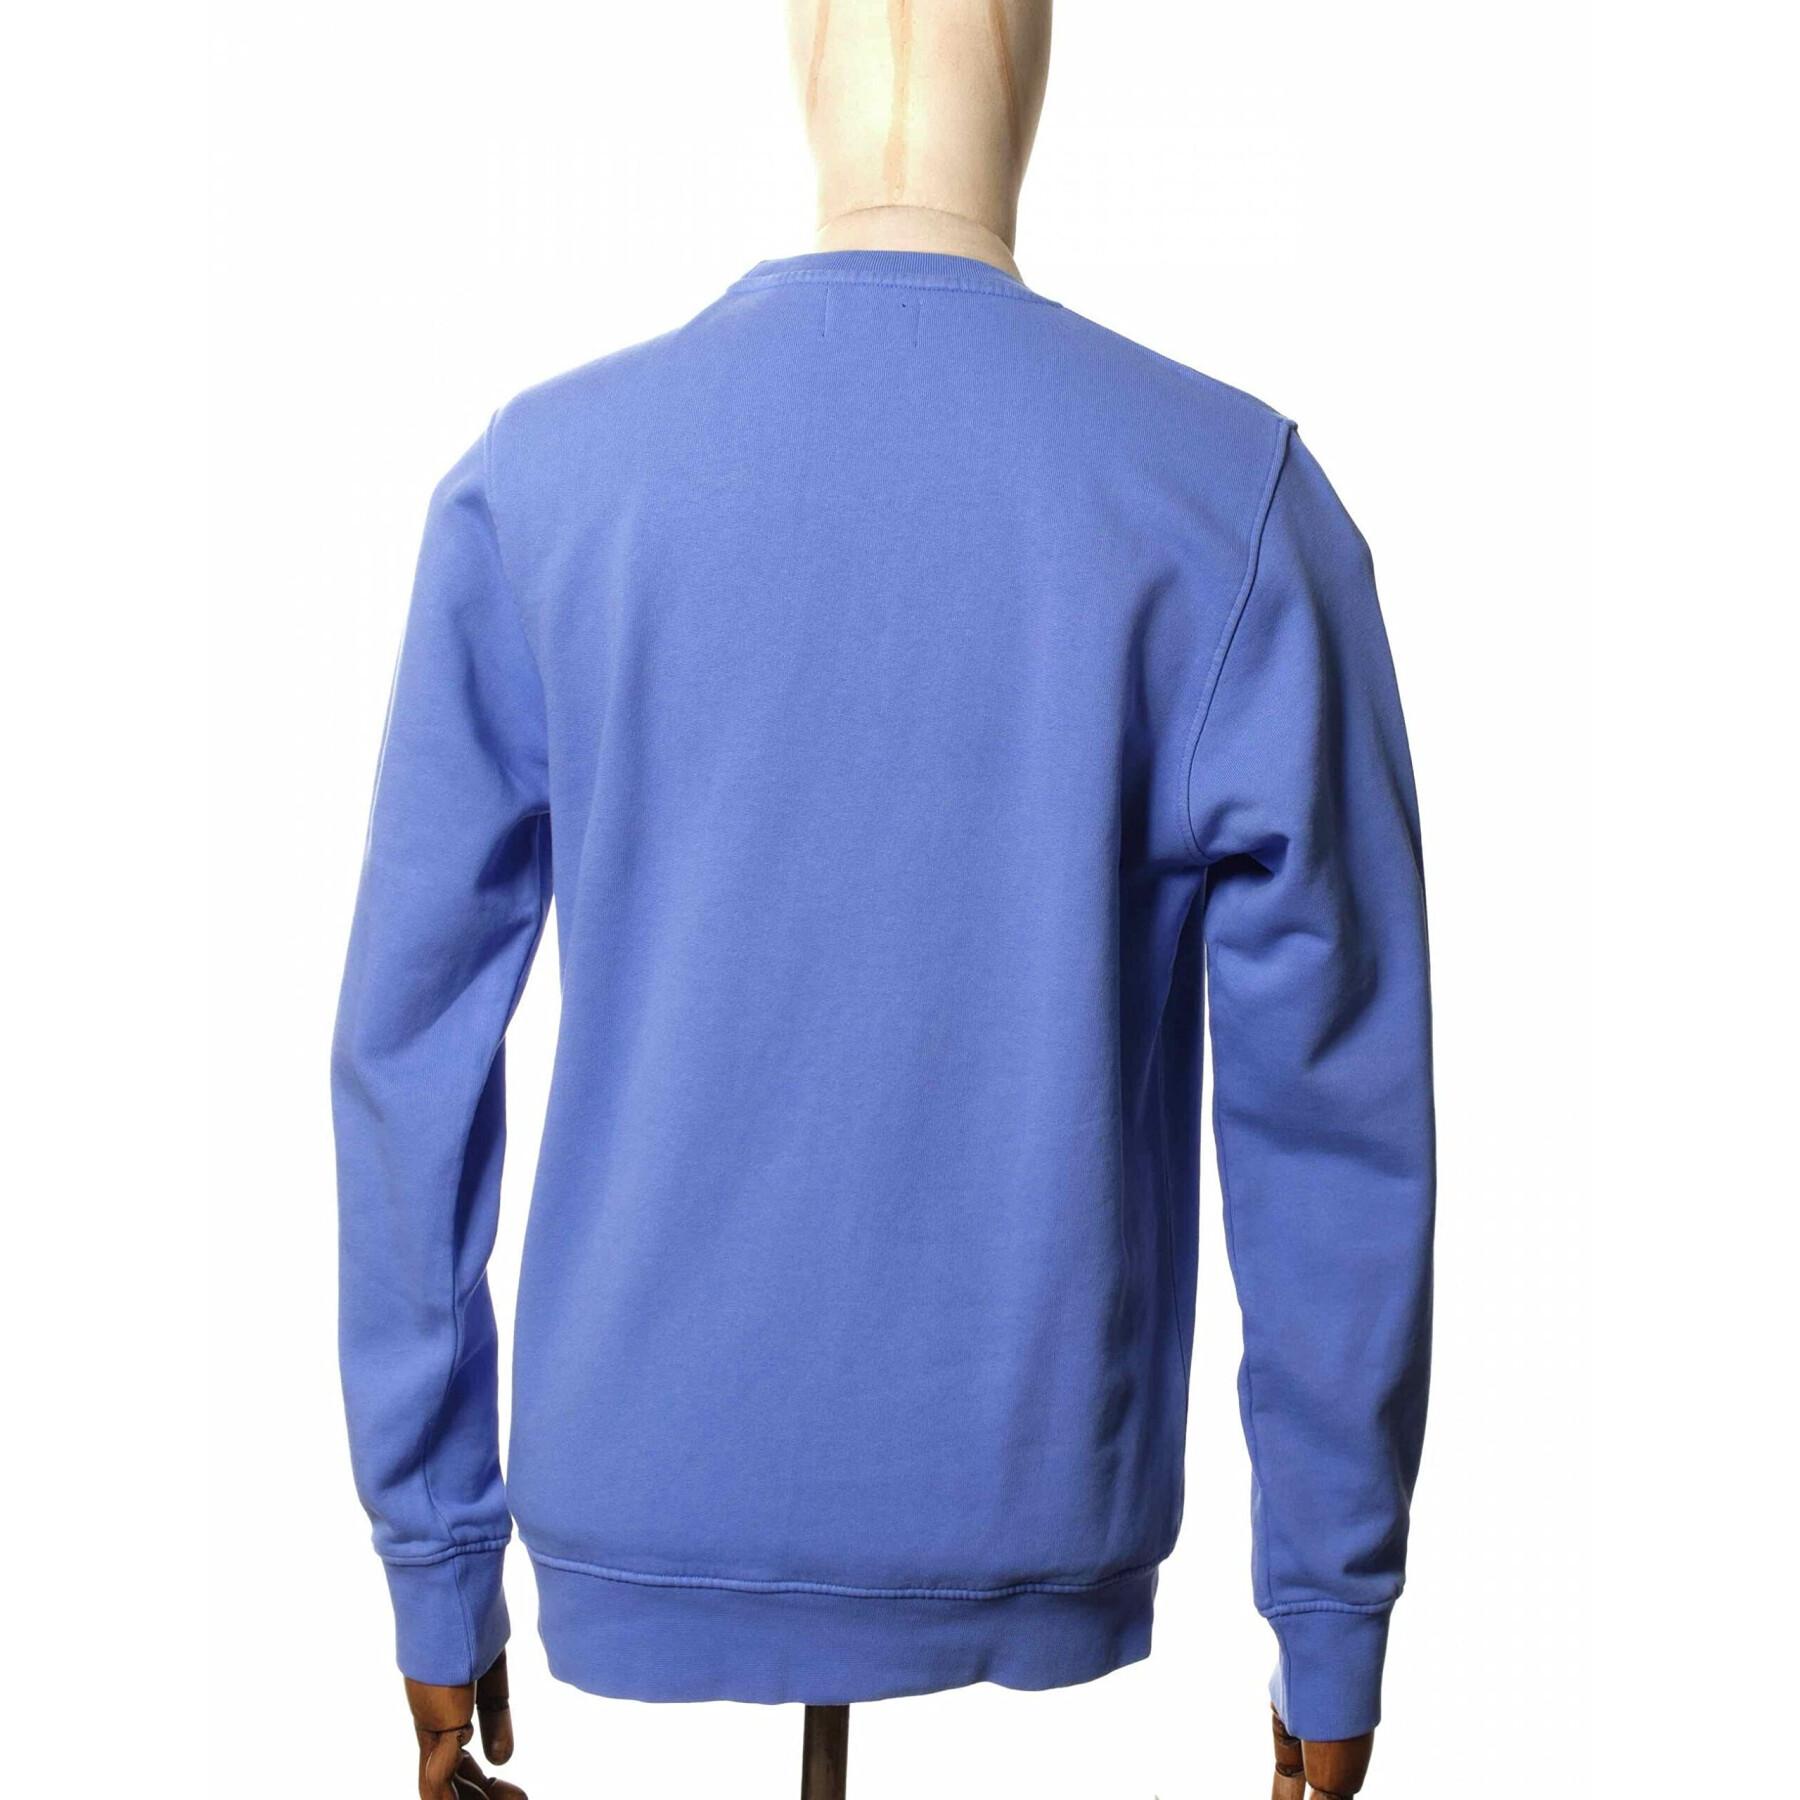 Bluza z okrągłym dekoltem Colorful Standard Classic Organic sky blue